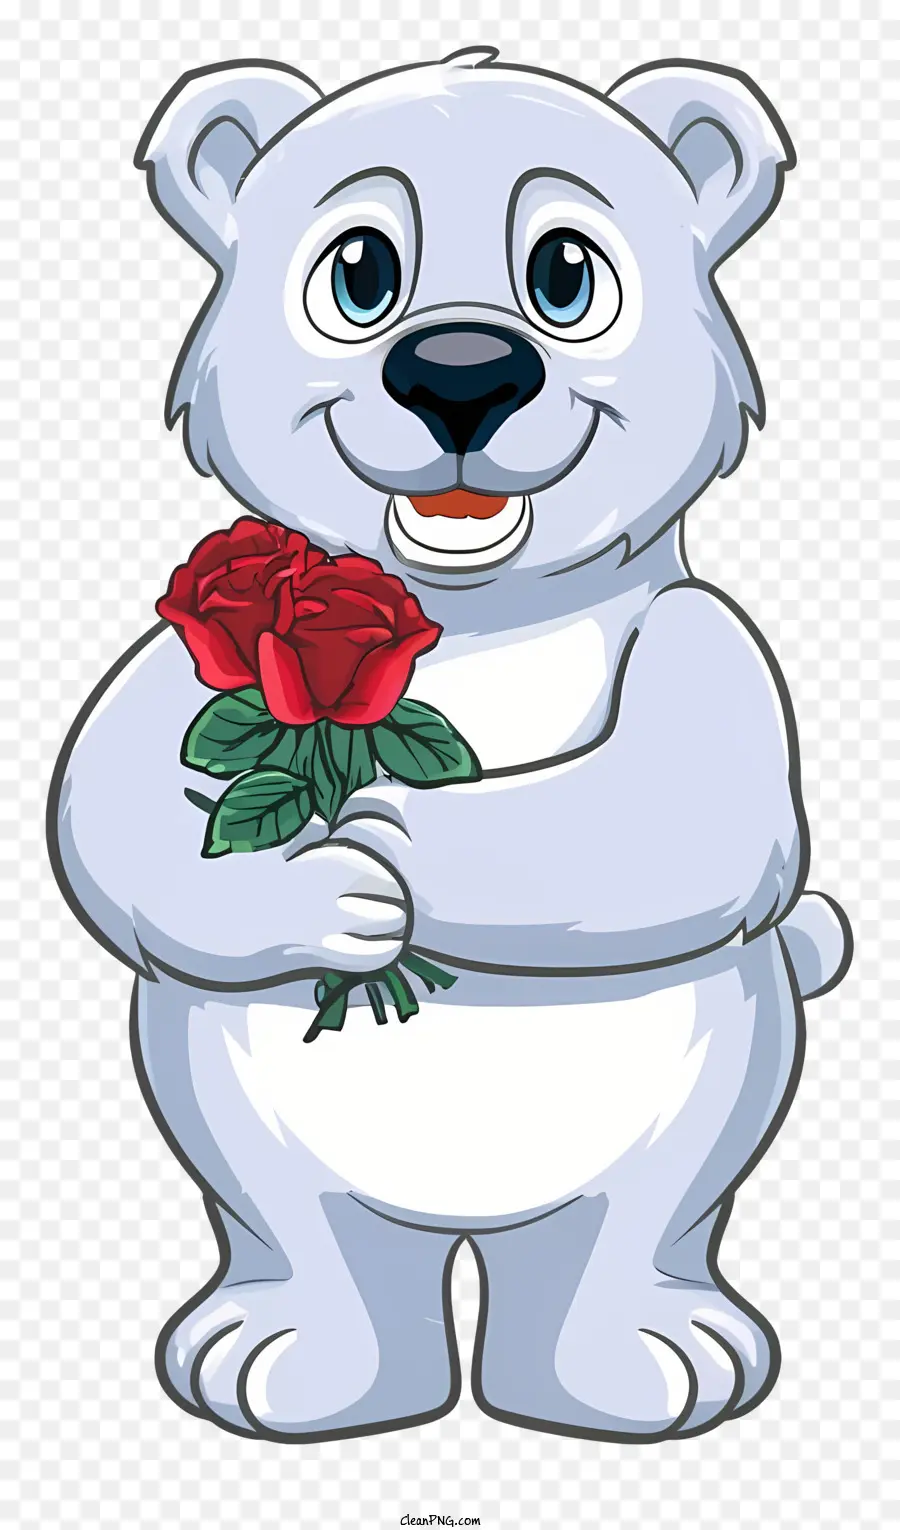 bông hồng đỏ - Gấu Bắc cực có hoa hồng đỏ trong tay